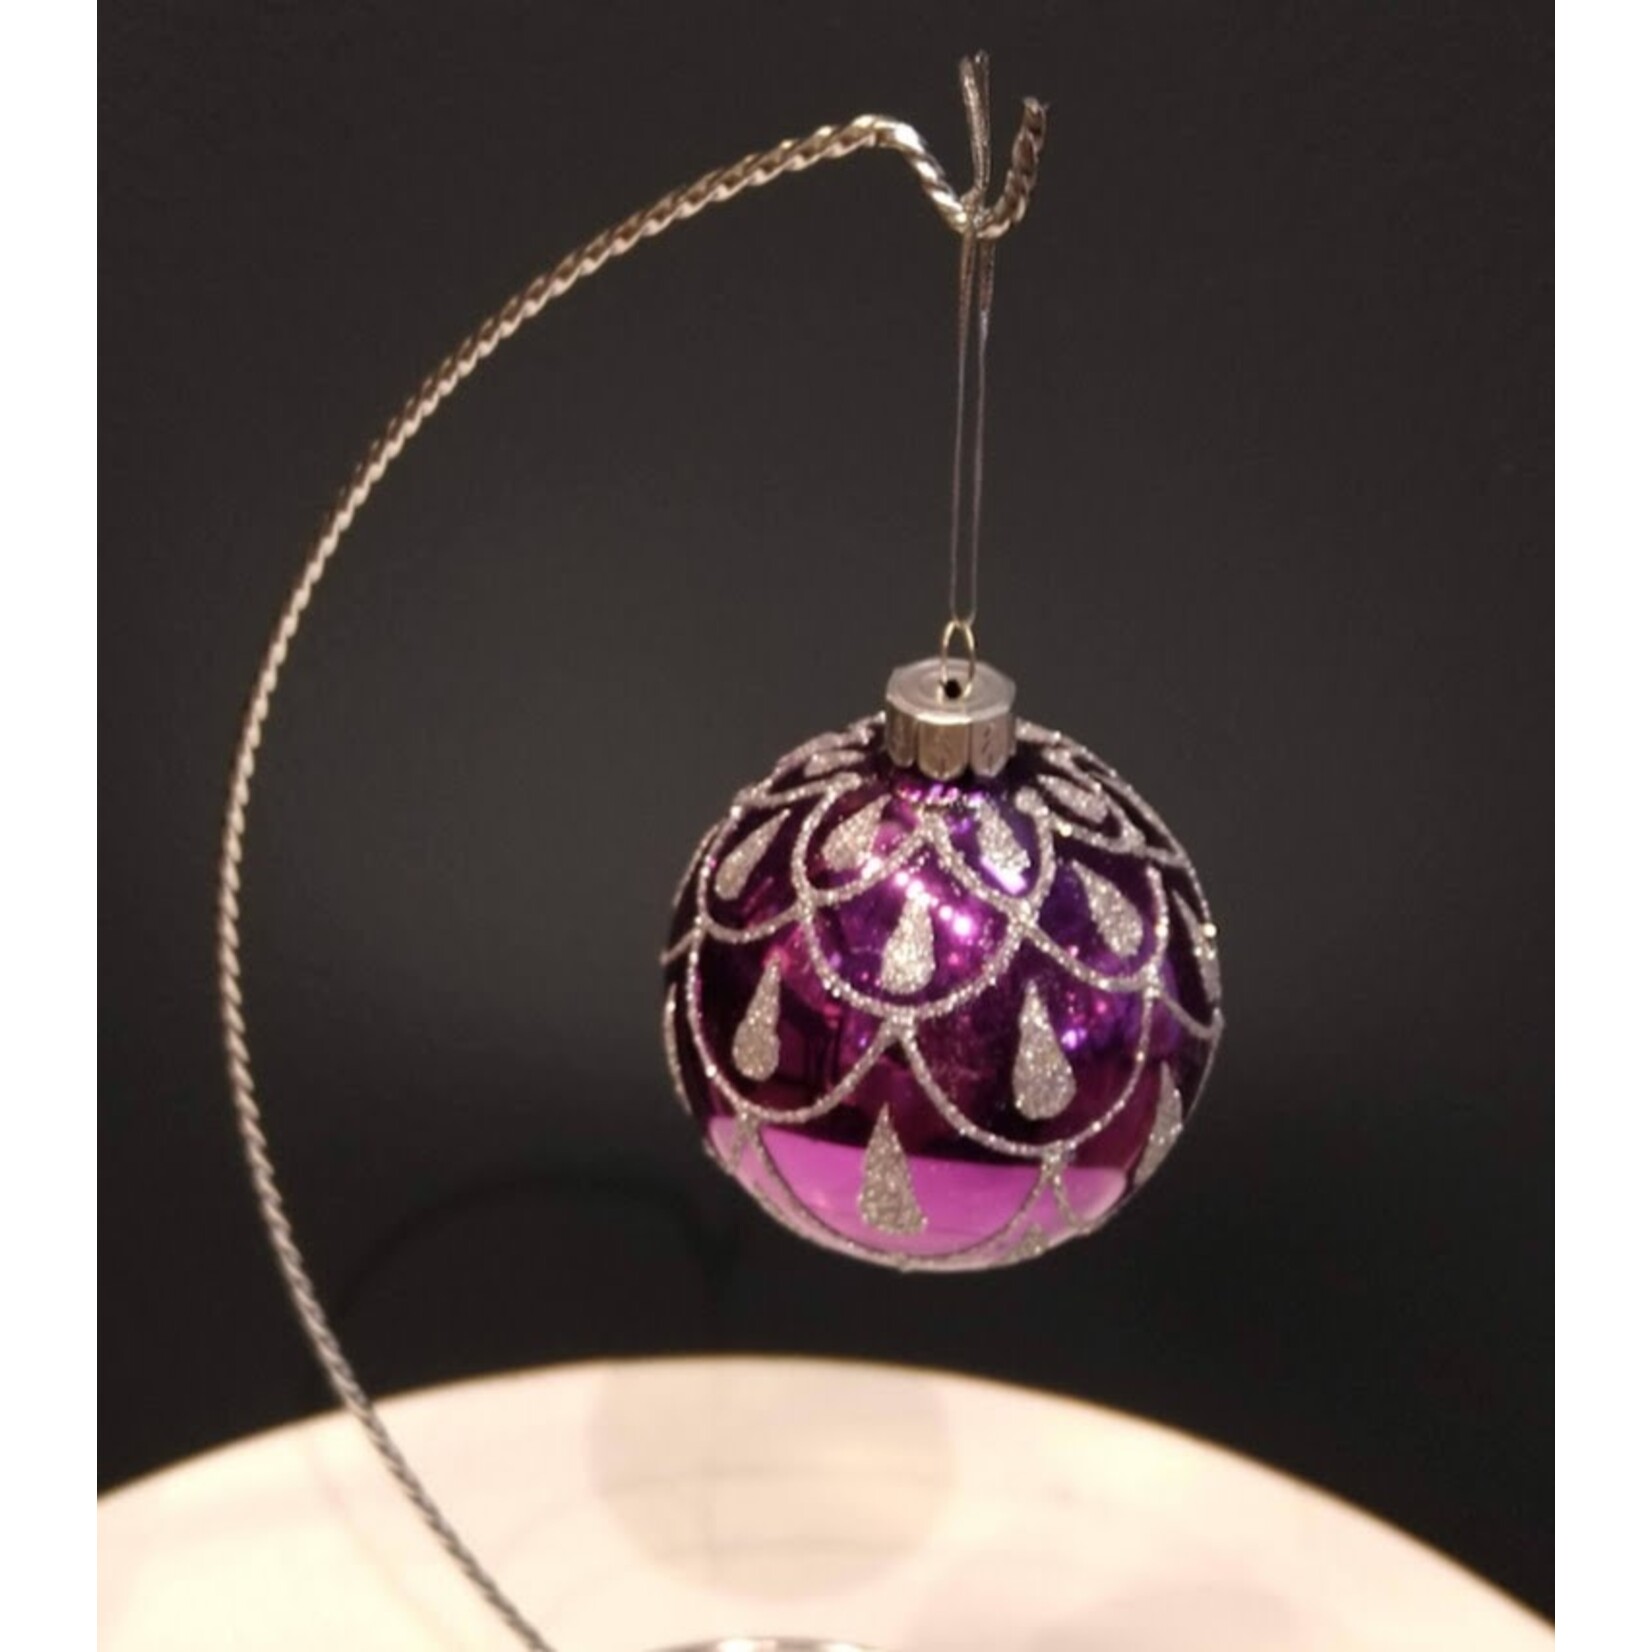 Two's Company Purple Ornament Medium